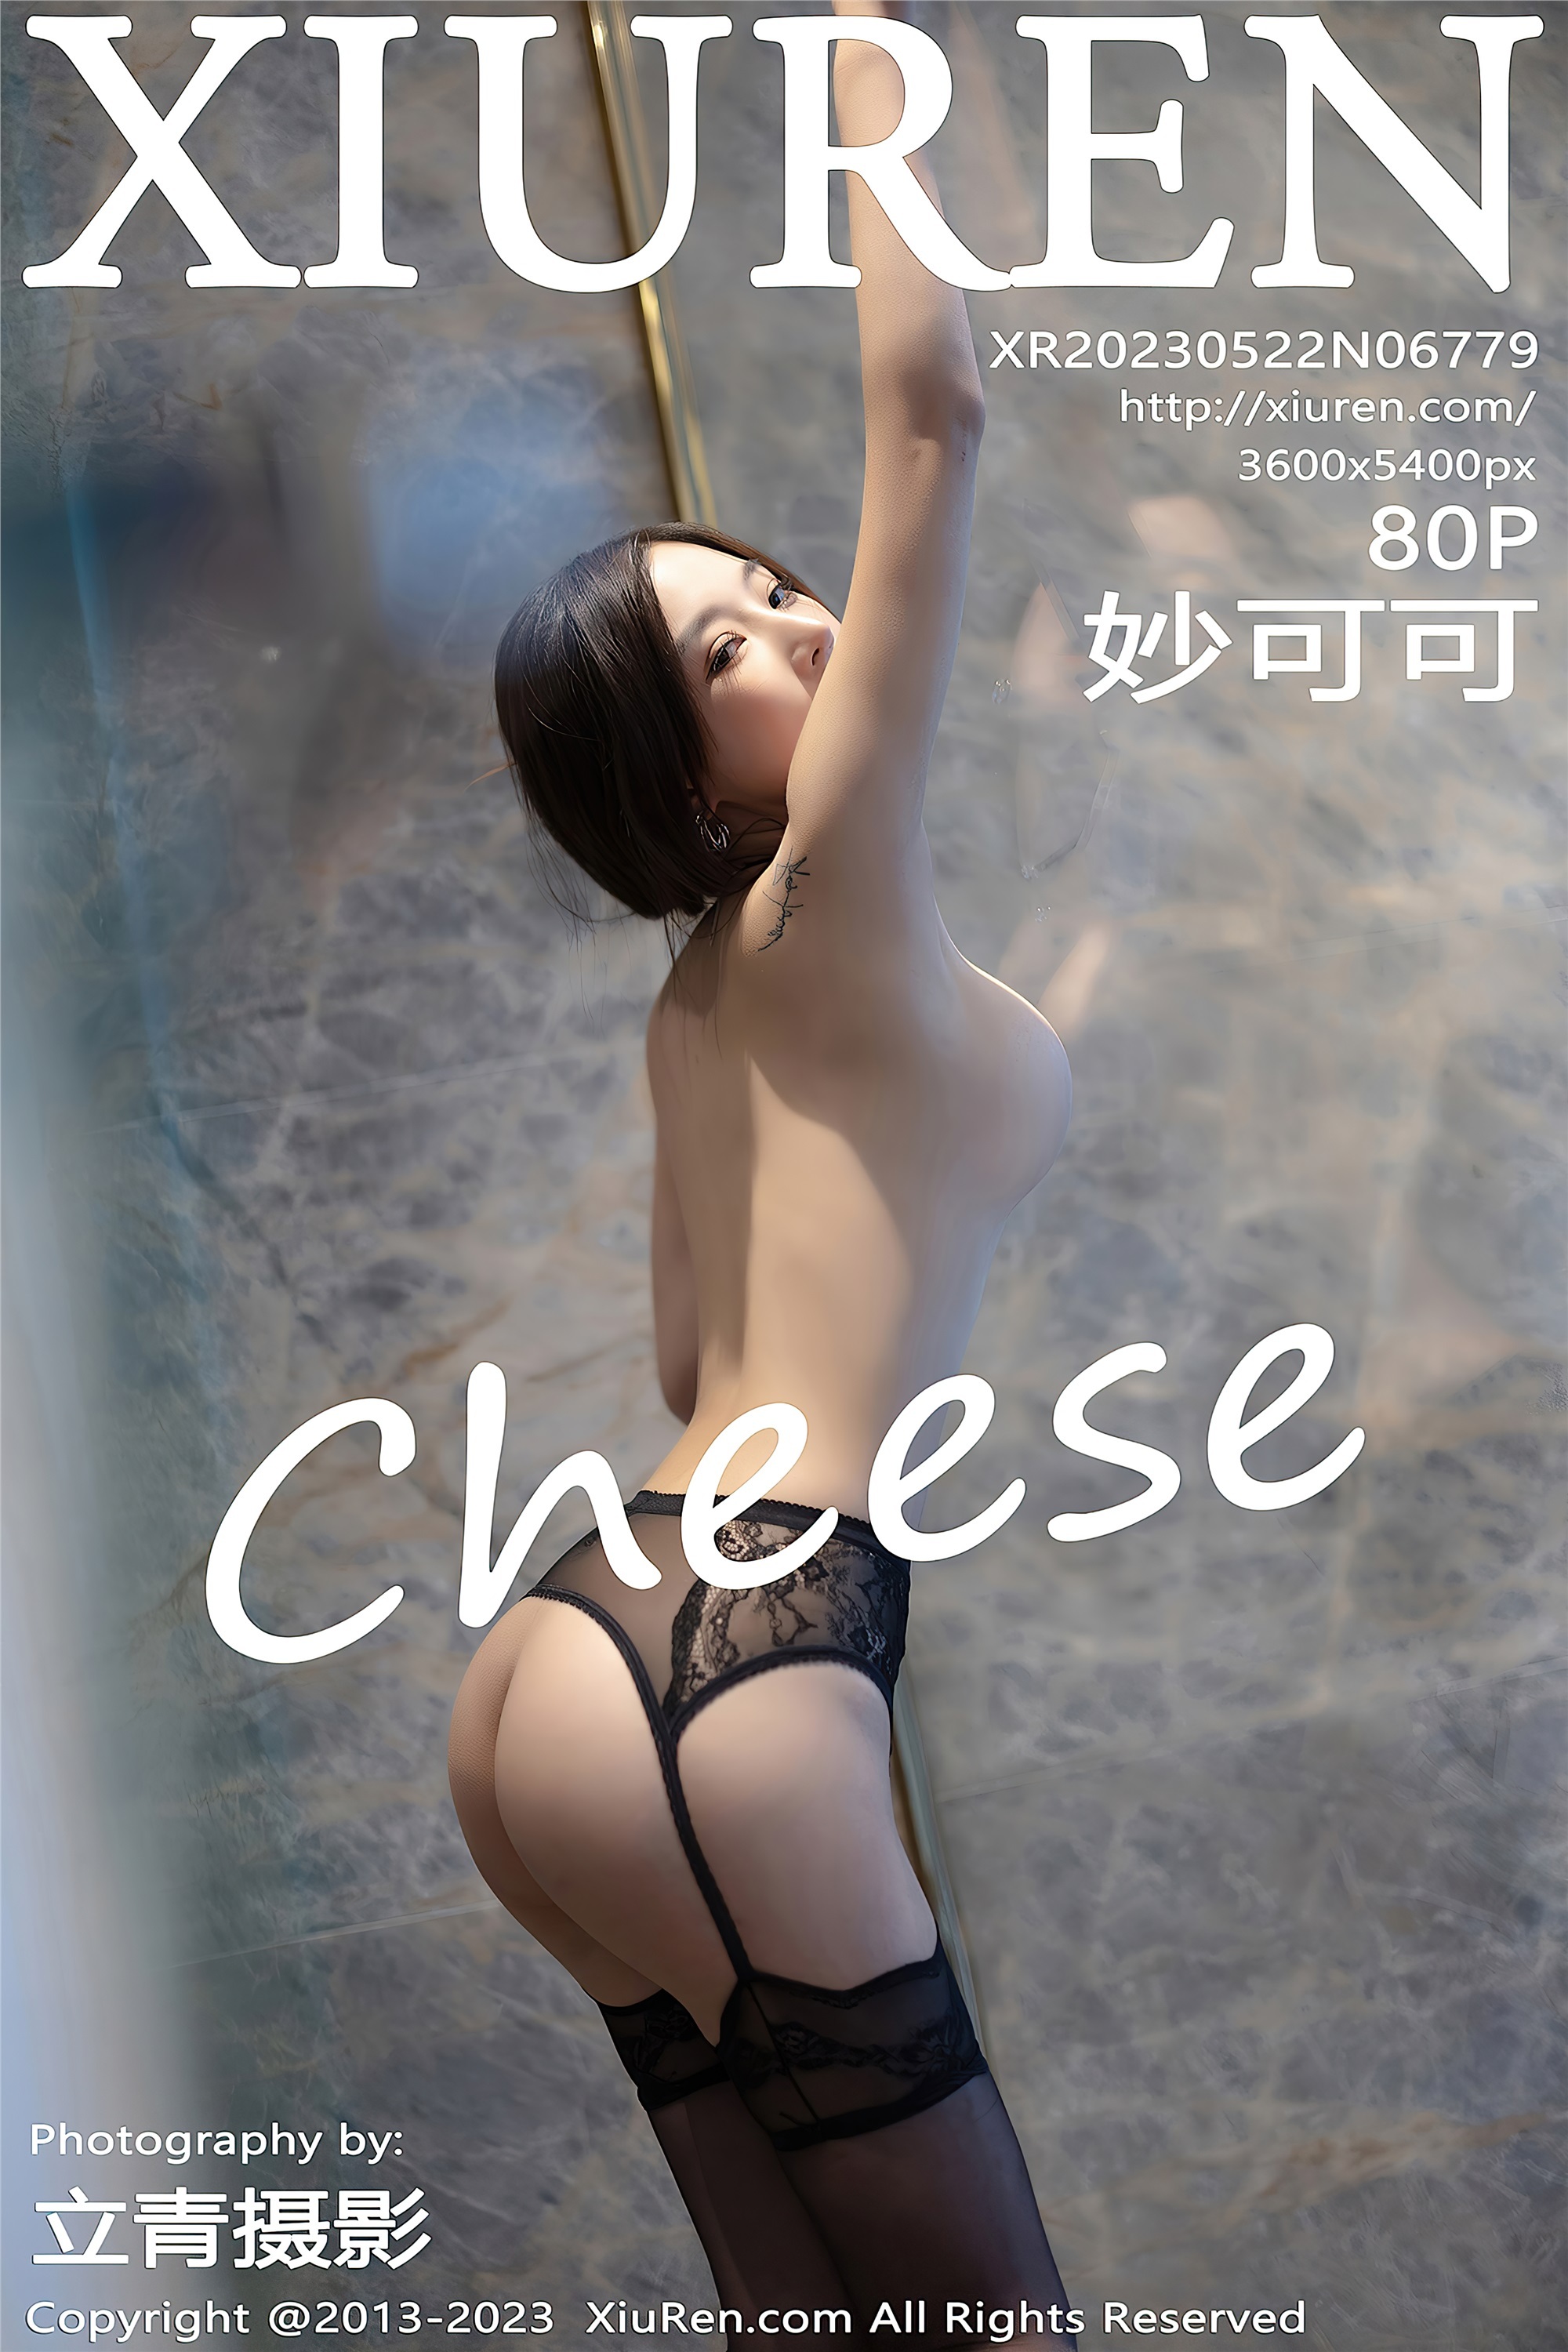 XiuRen Xiuren.com May 22, 2023 NO.6779 Miaoko Cheese